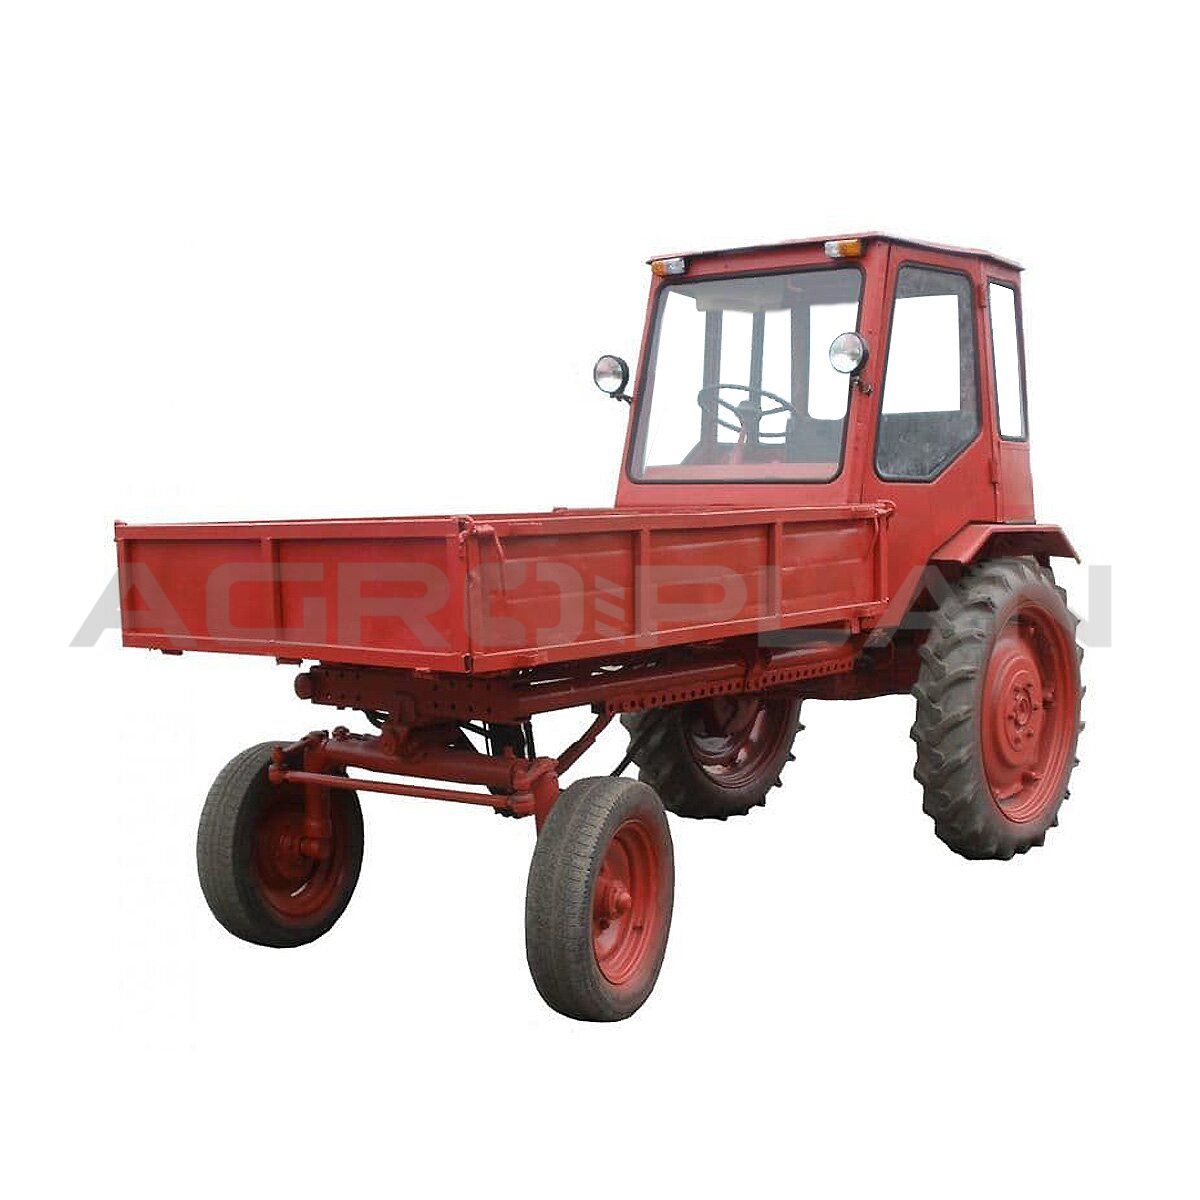 трактор т 16 цена - Кыргызстан - Страница 5